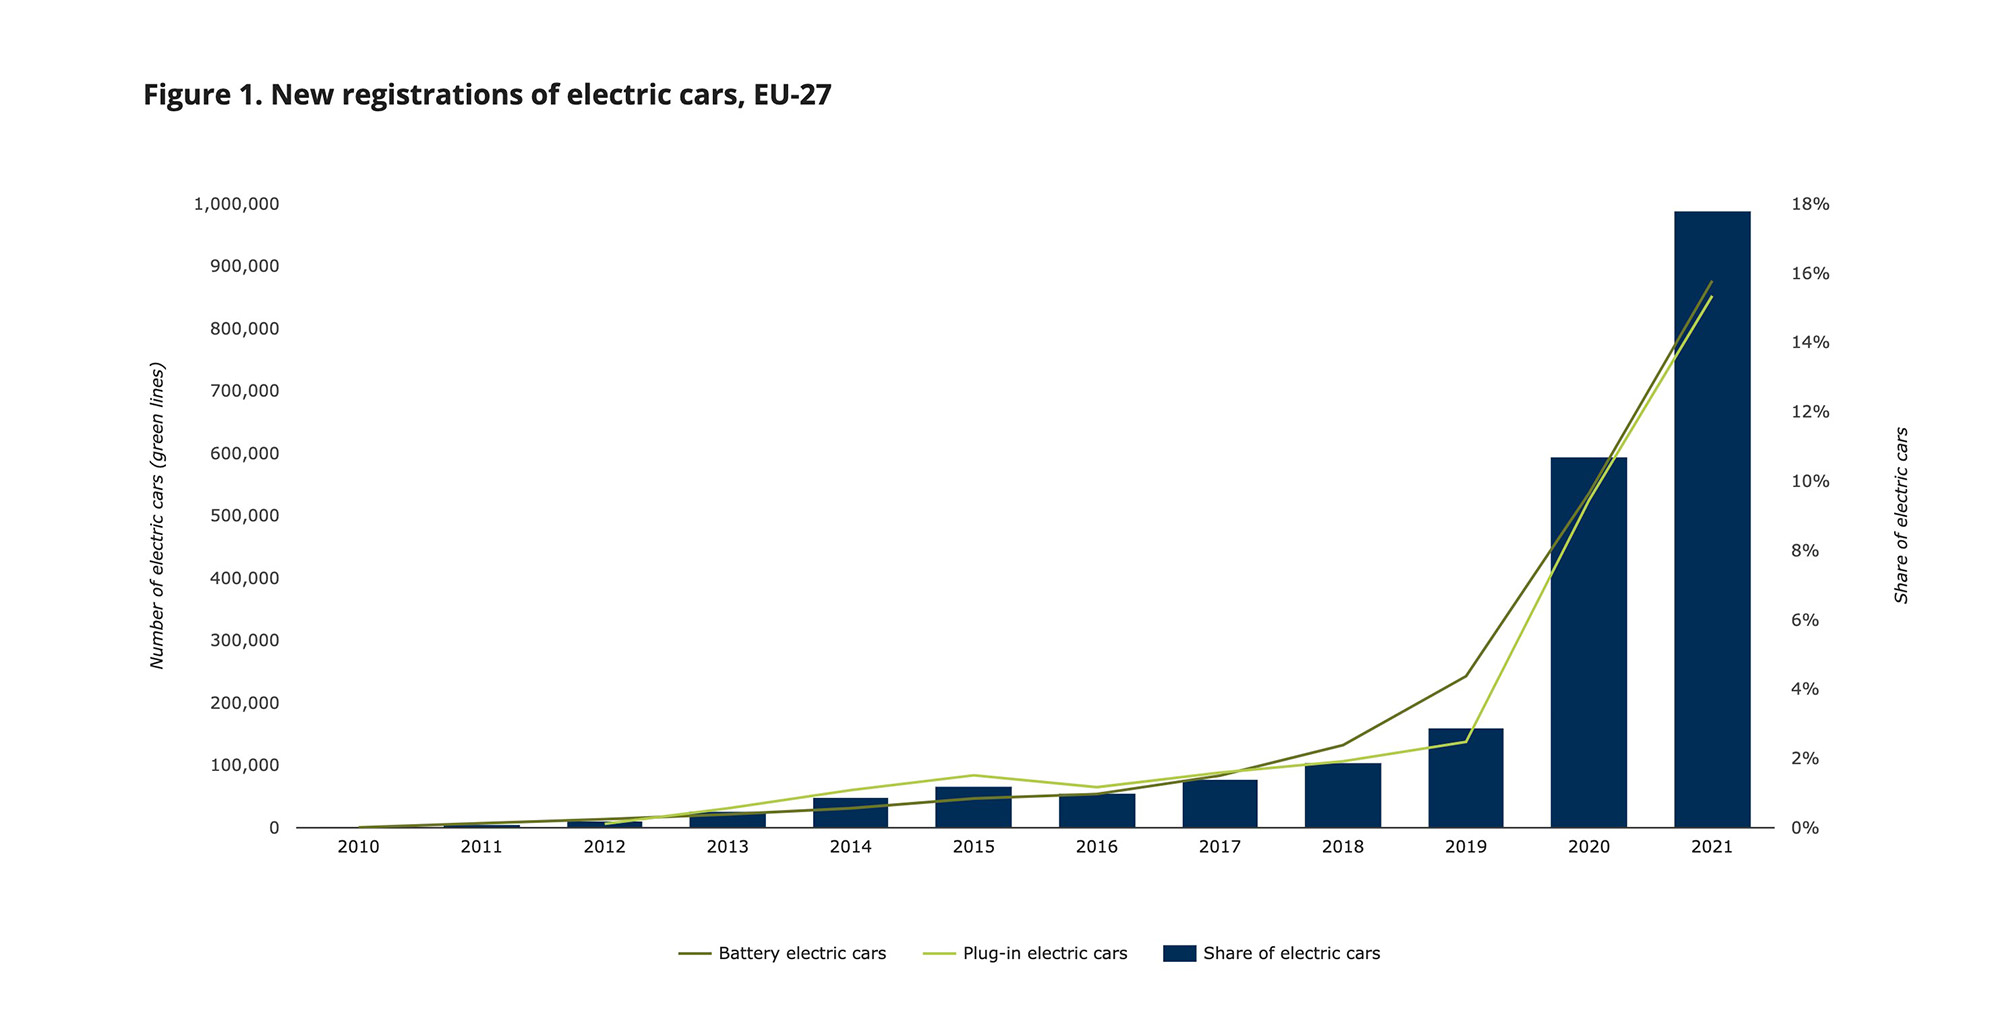 Infografik zum Anstieg der Zulassungen von Elektrofahrzeugen von 2010 bis 2021